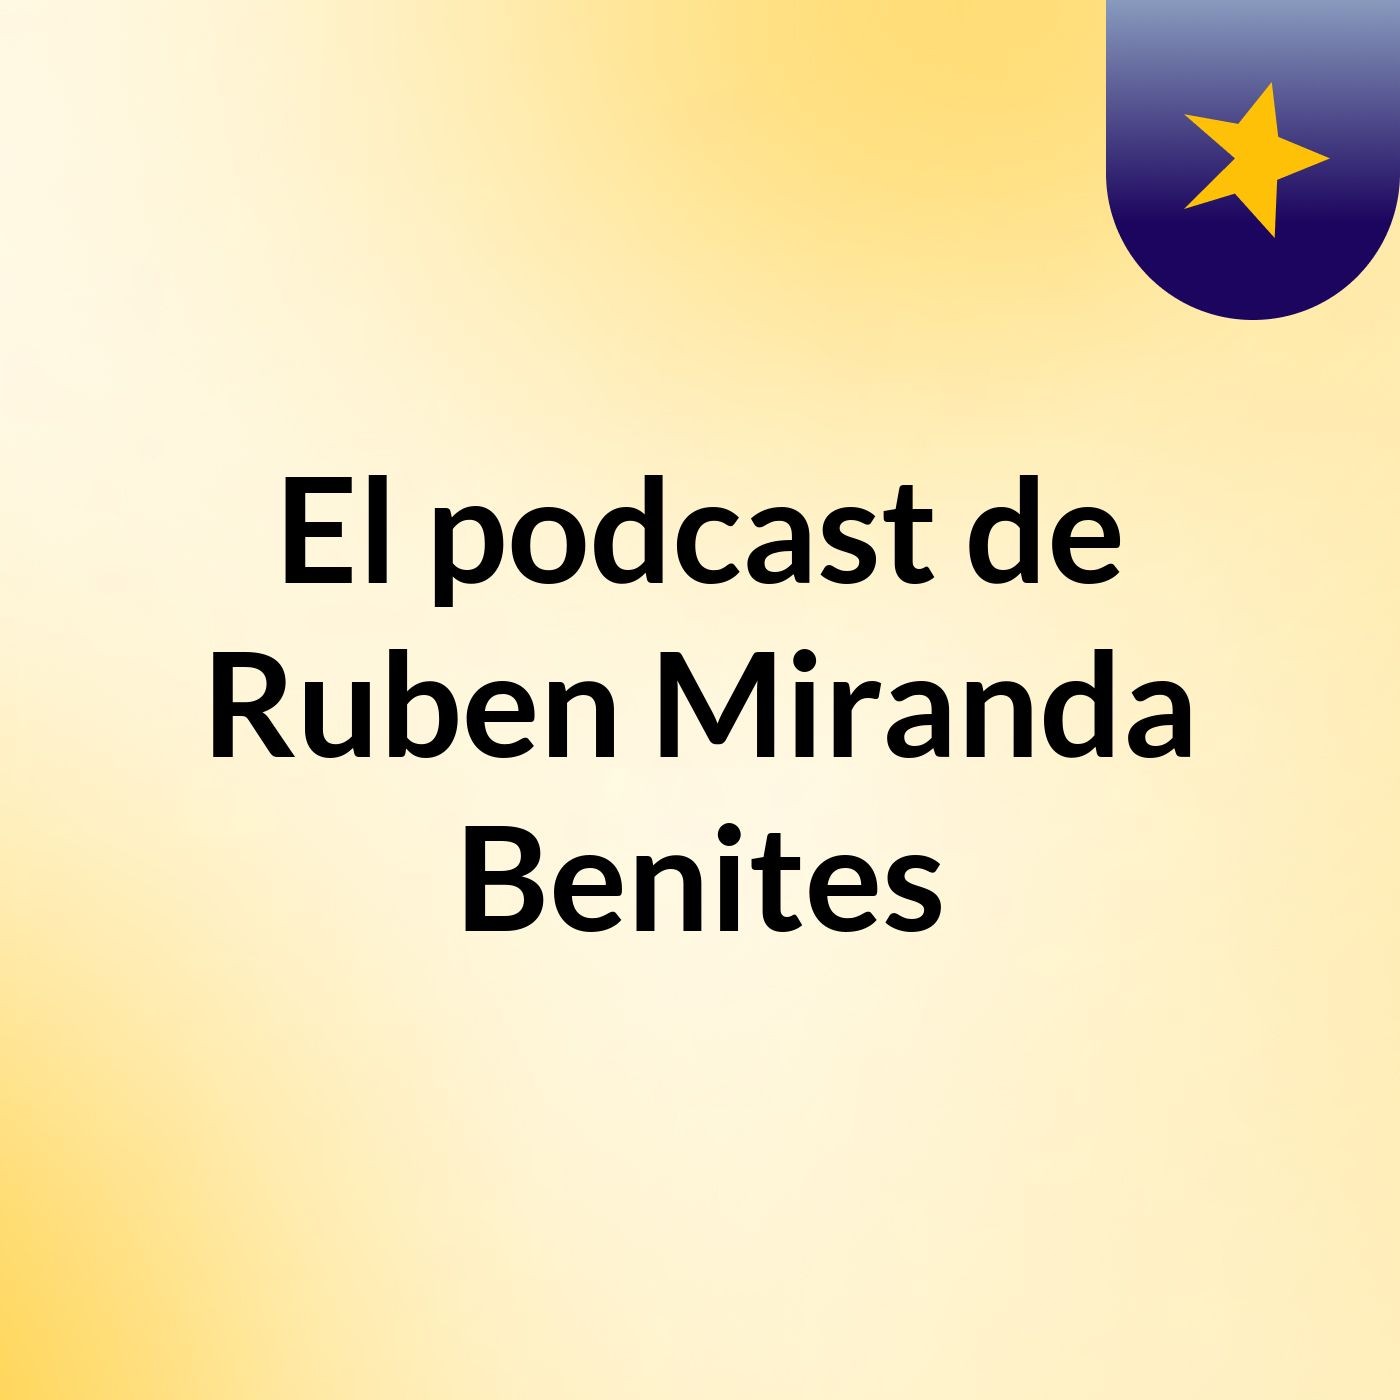 El podcast de Ruben Miranda Benites